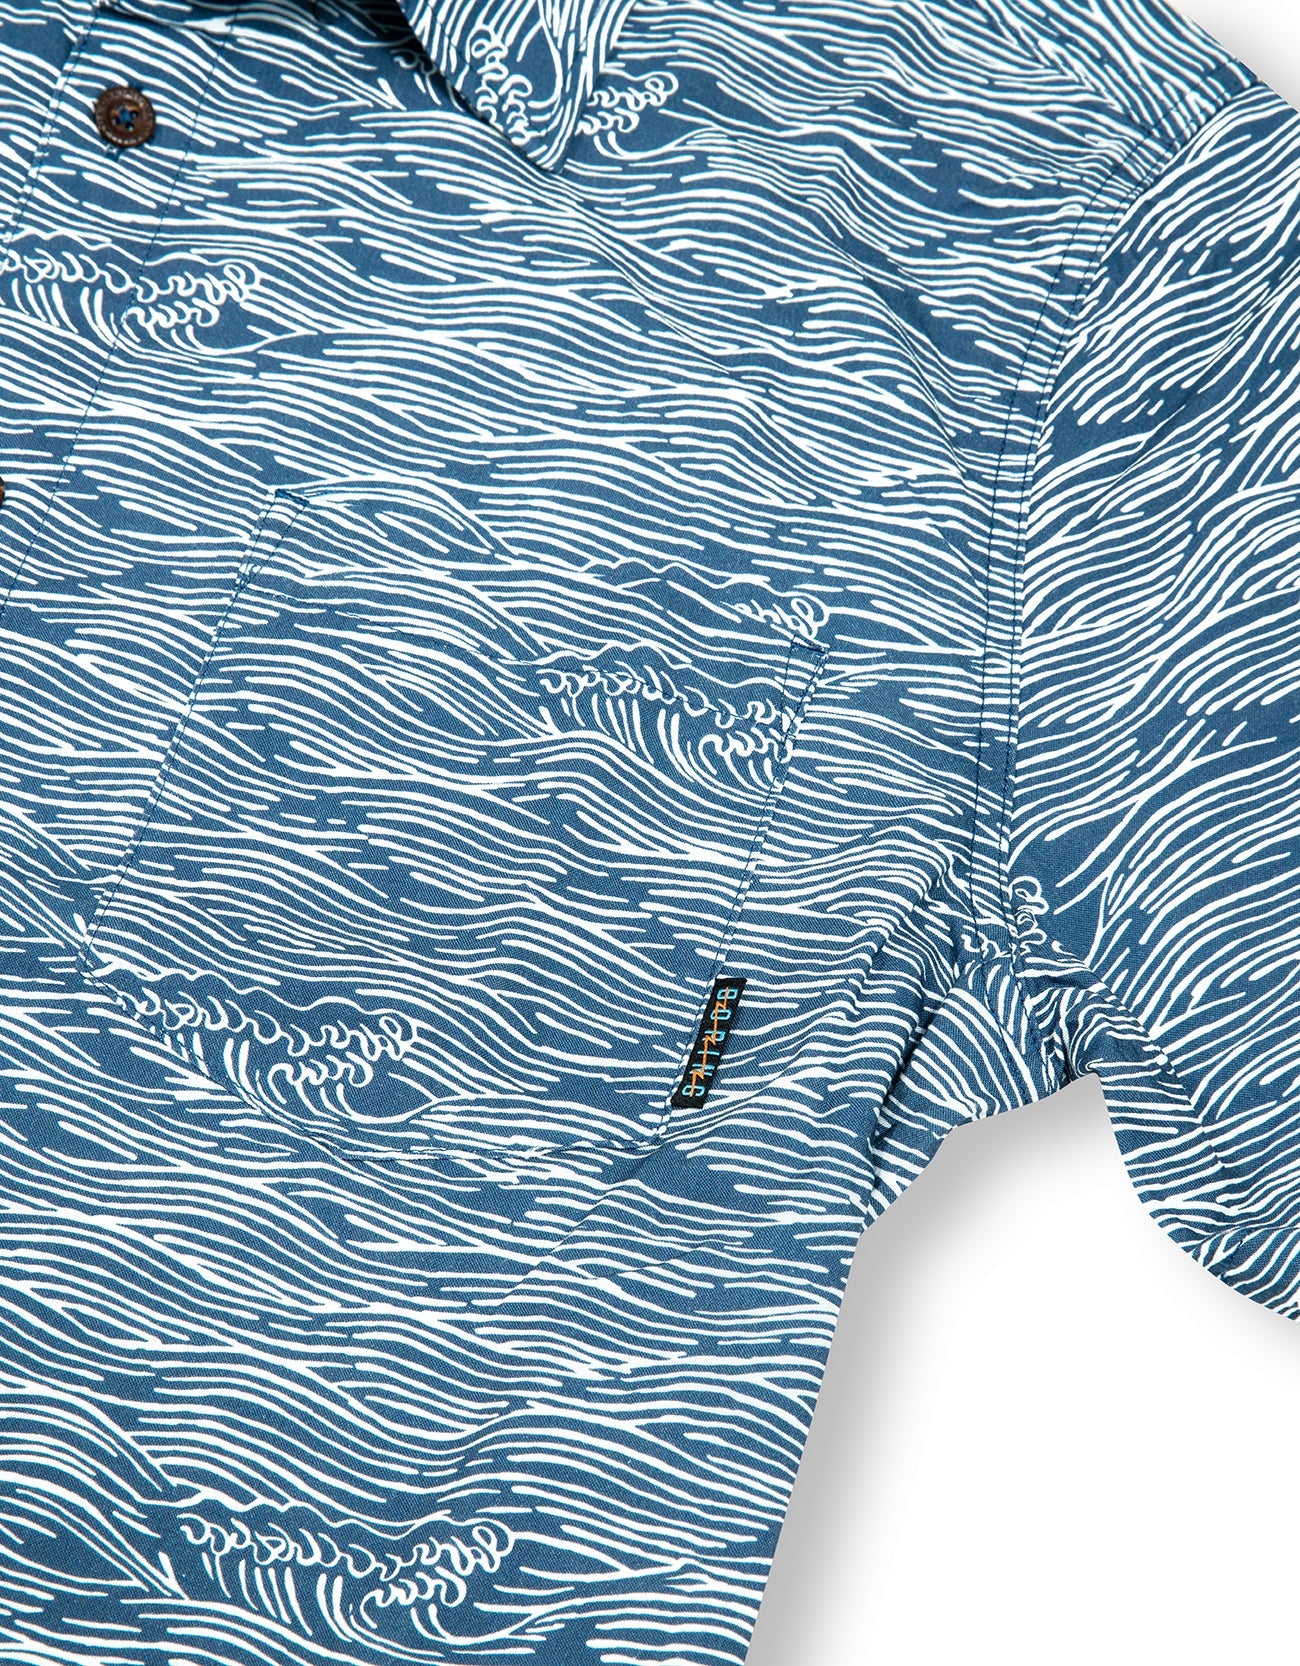 7-Seas Short Sleeve Button-Down Shirt - Roll Tides (Deep Sea)